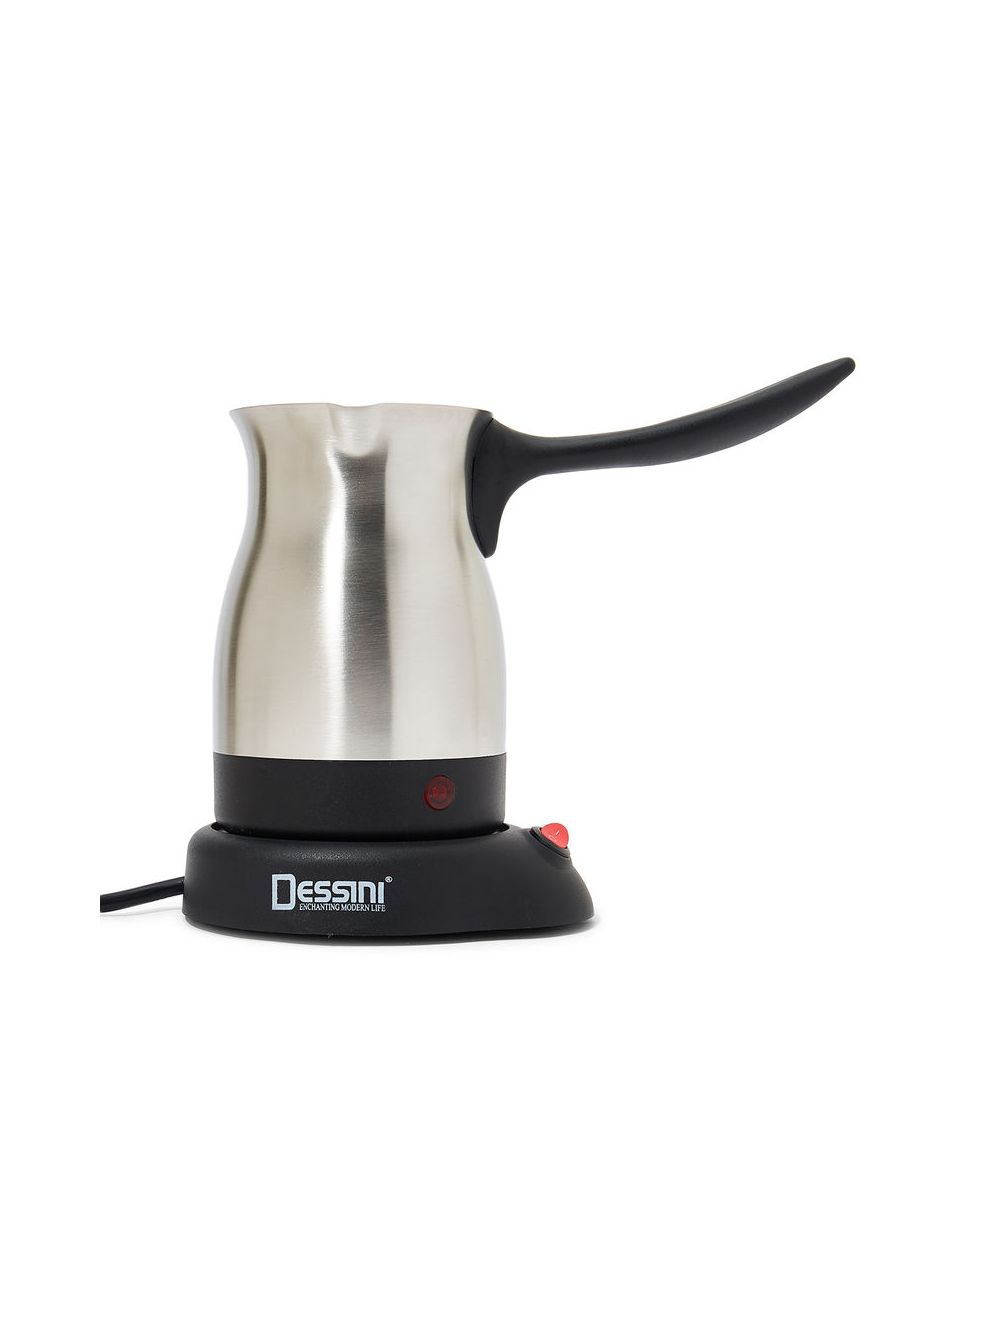 Dessini Turkish Coffee Maker-AKAT91